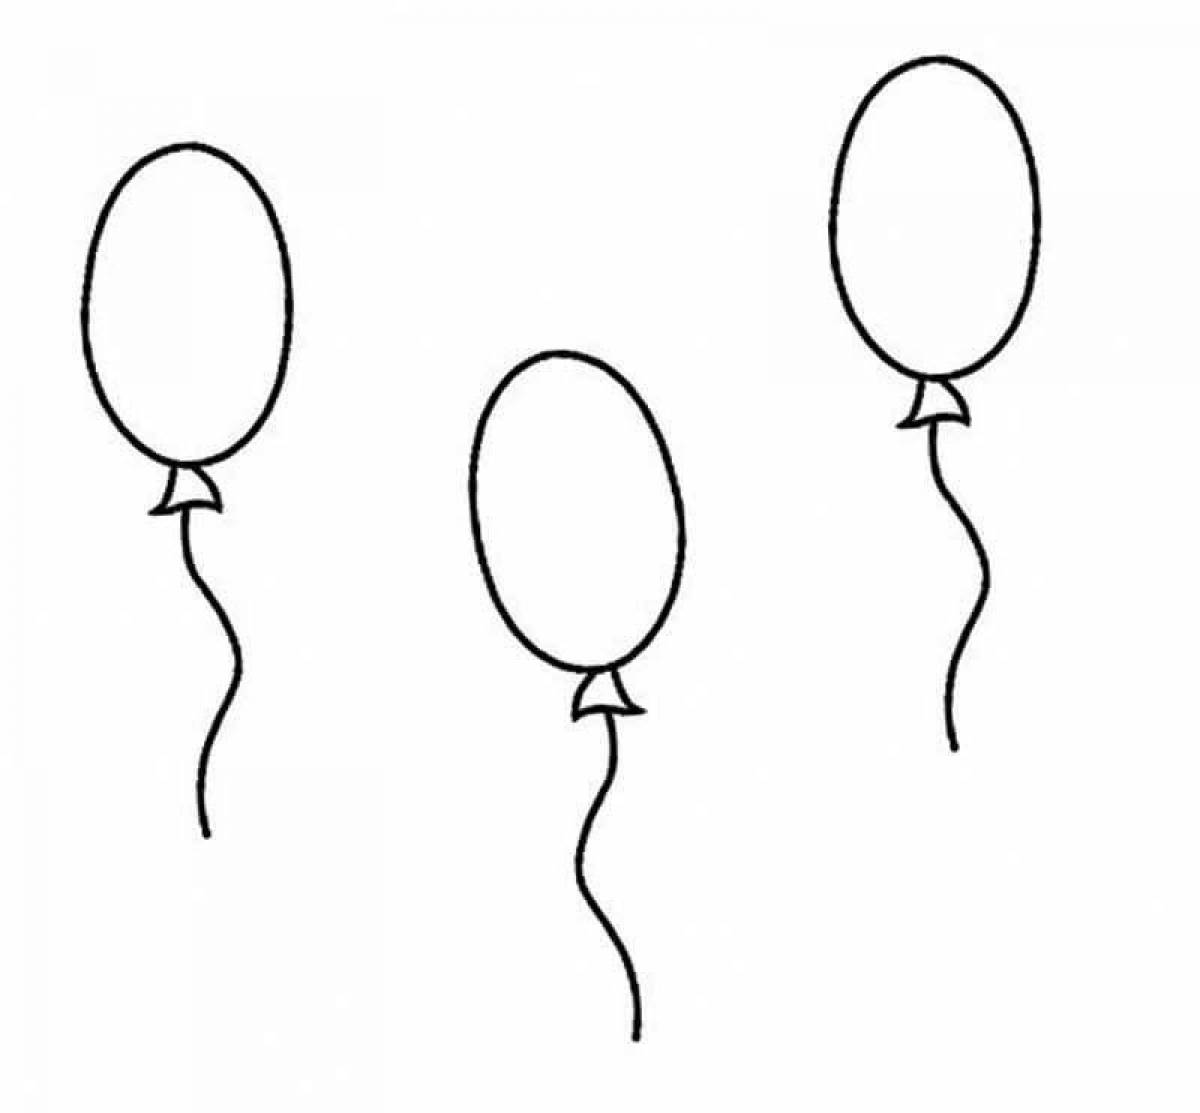 Небольшой легкий шарик. Воздушный шарик раскраска. Шарики раскраска. Раскраска шарики воздушные для детей. Рисование воздушными шариками.